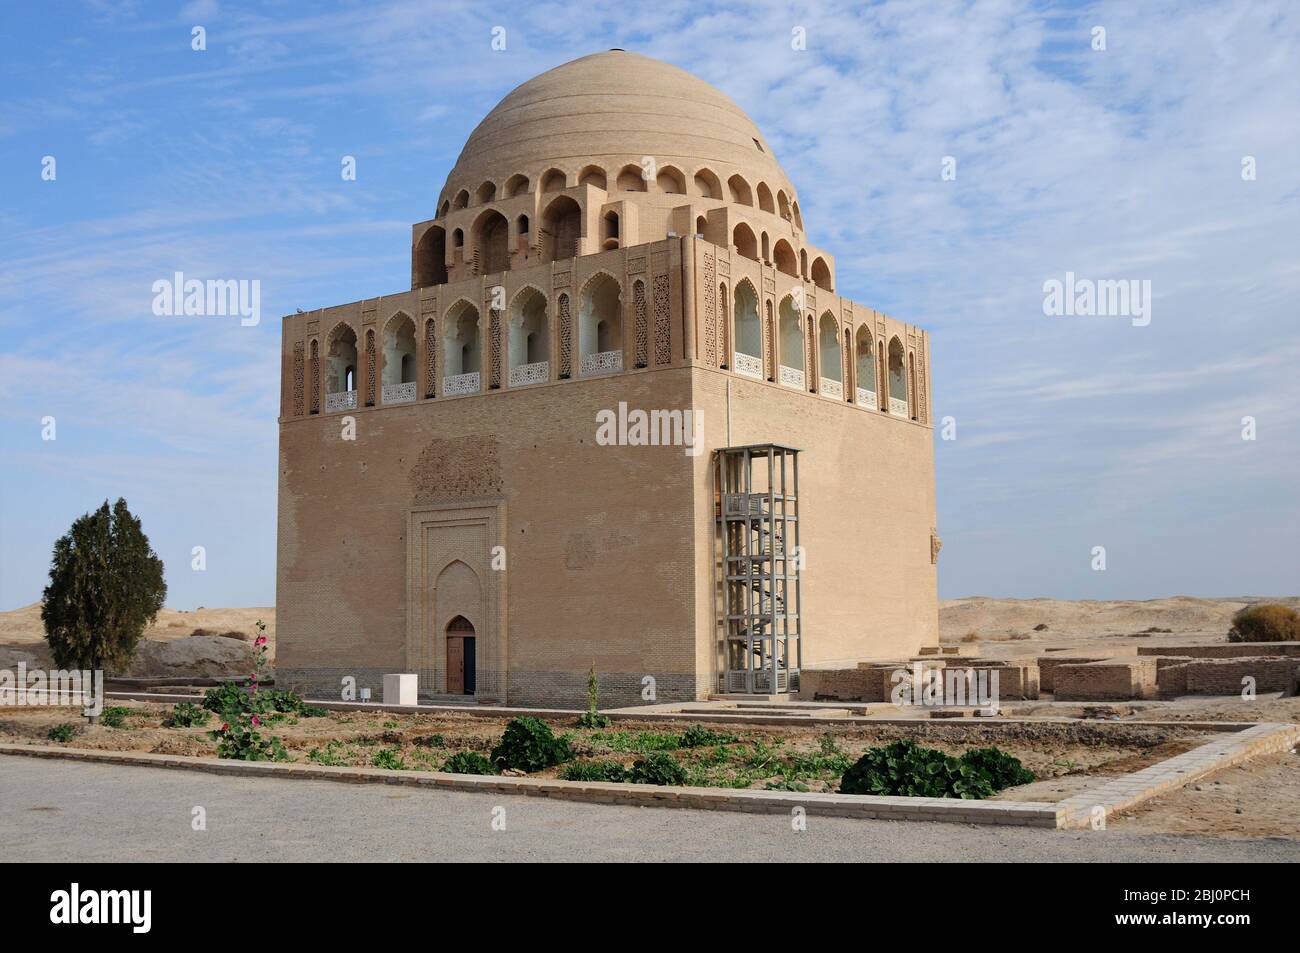 La Tumba del Sultán Sencer está situada en la ciudad de Merv, en Turkmenistán. El Sultán Sencer es el gobernante del Gran Estado Seljuk. Foto de stock